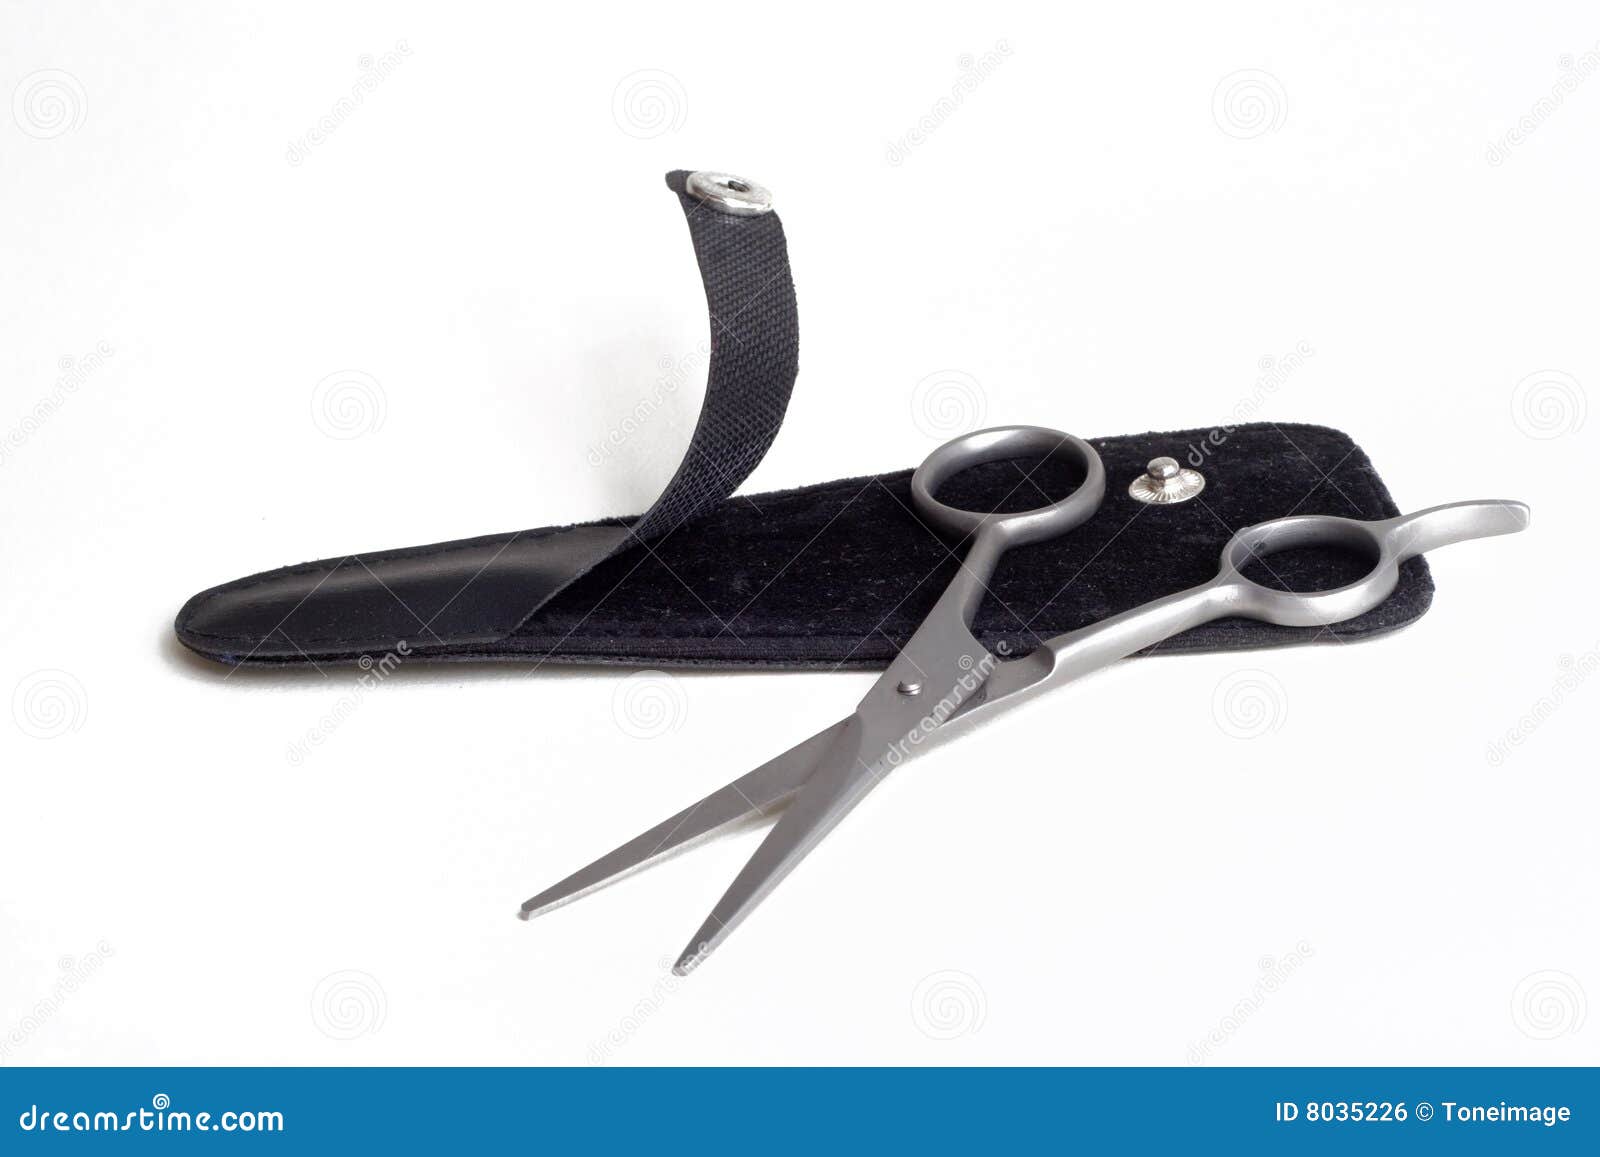 haircutting scissor